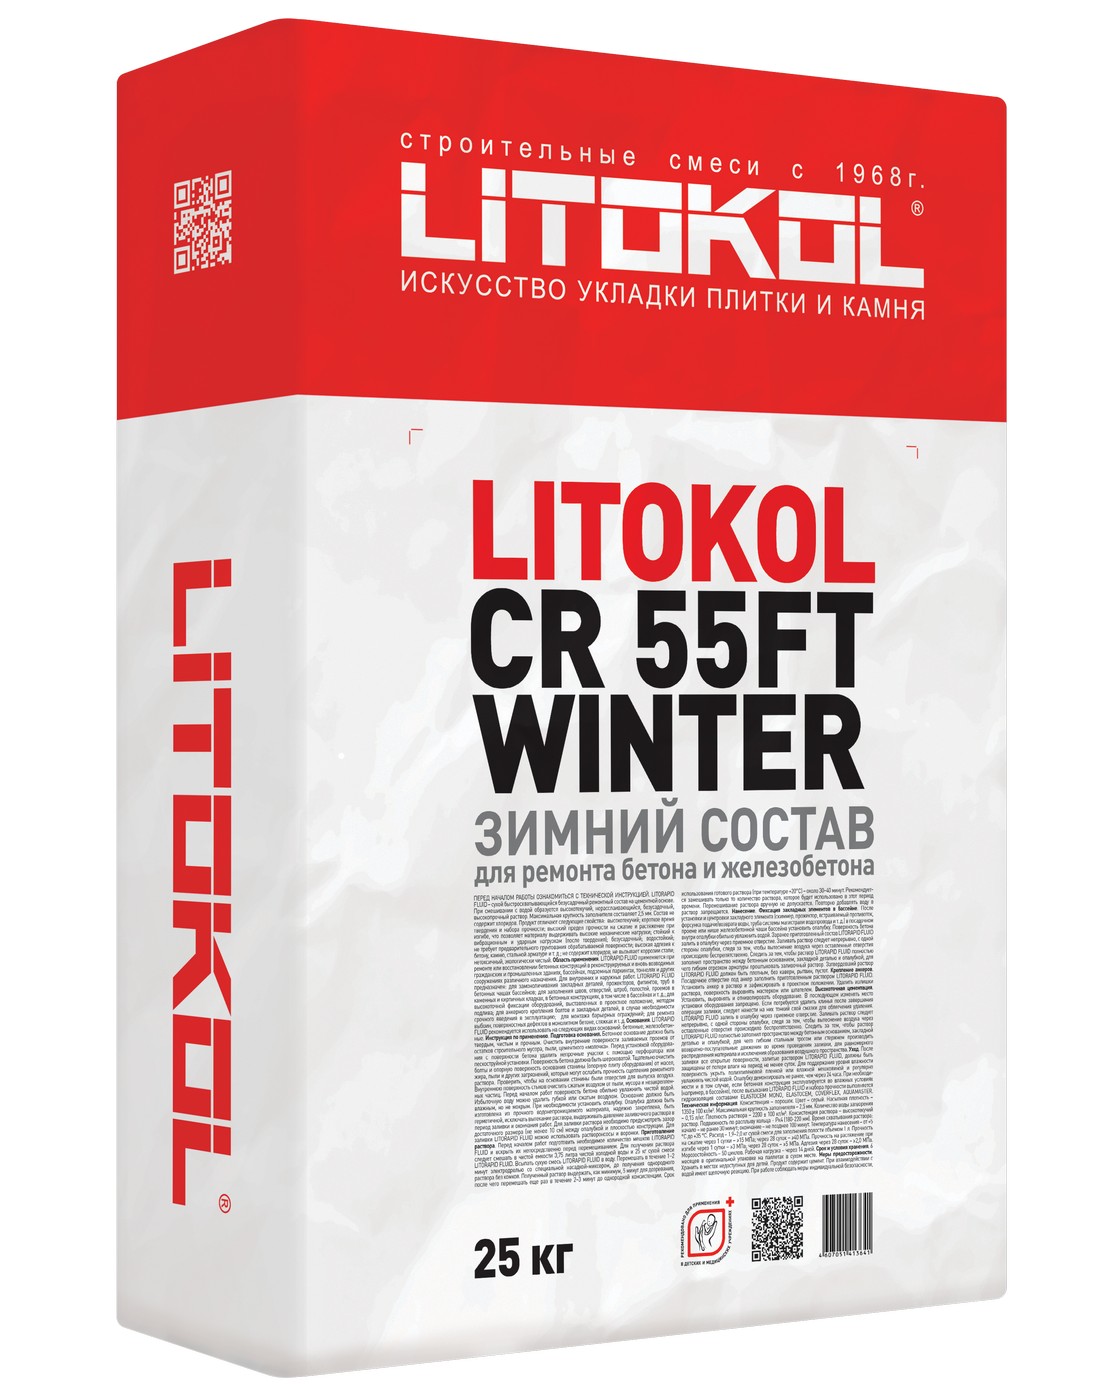 Ремонтный и защитный состав  Litokol CR55FT Winter 25кг 499460002 ПОД ЗАКАЗ